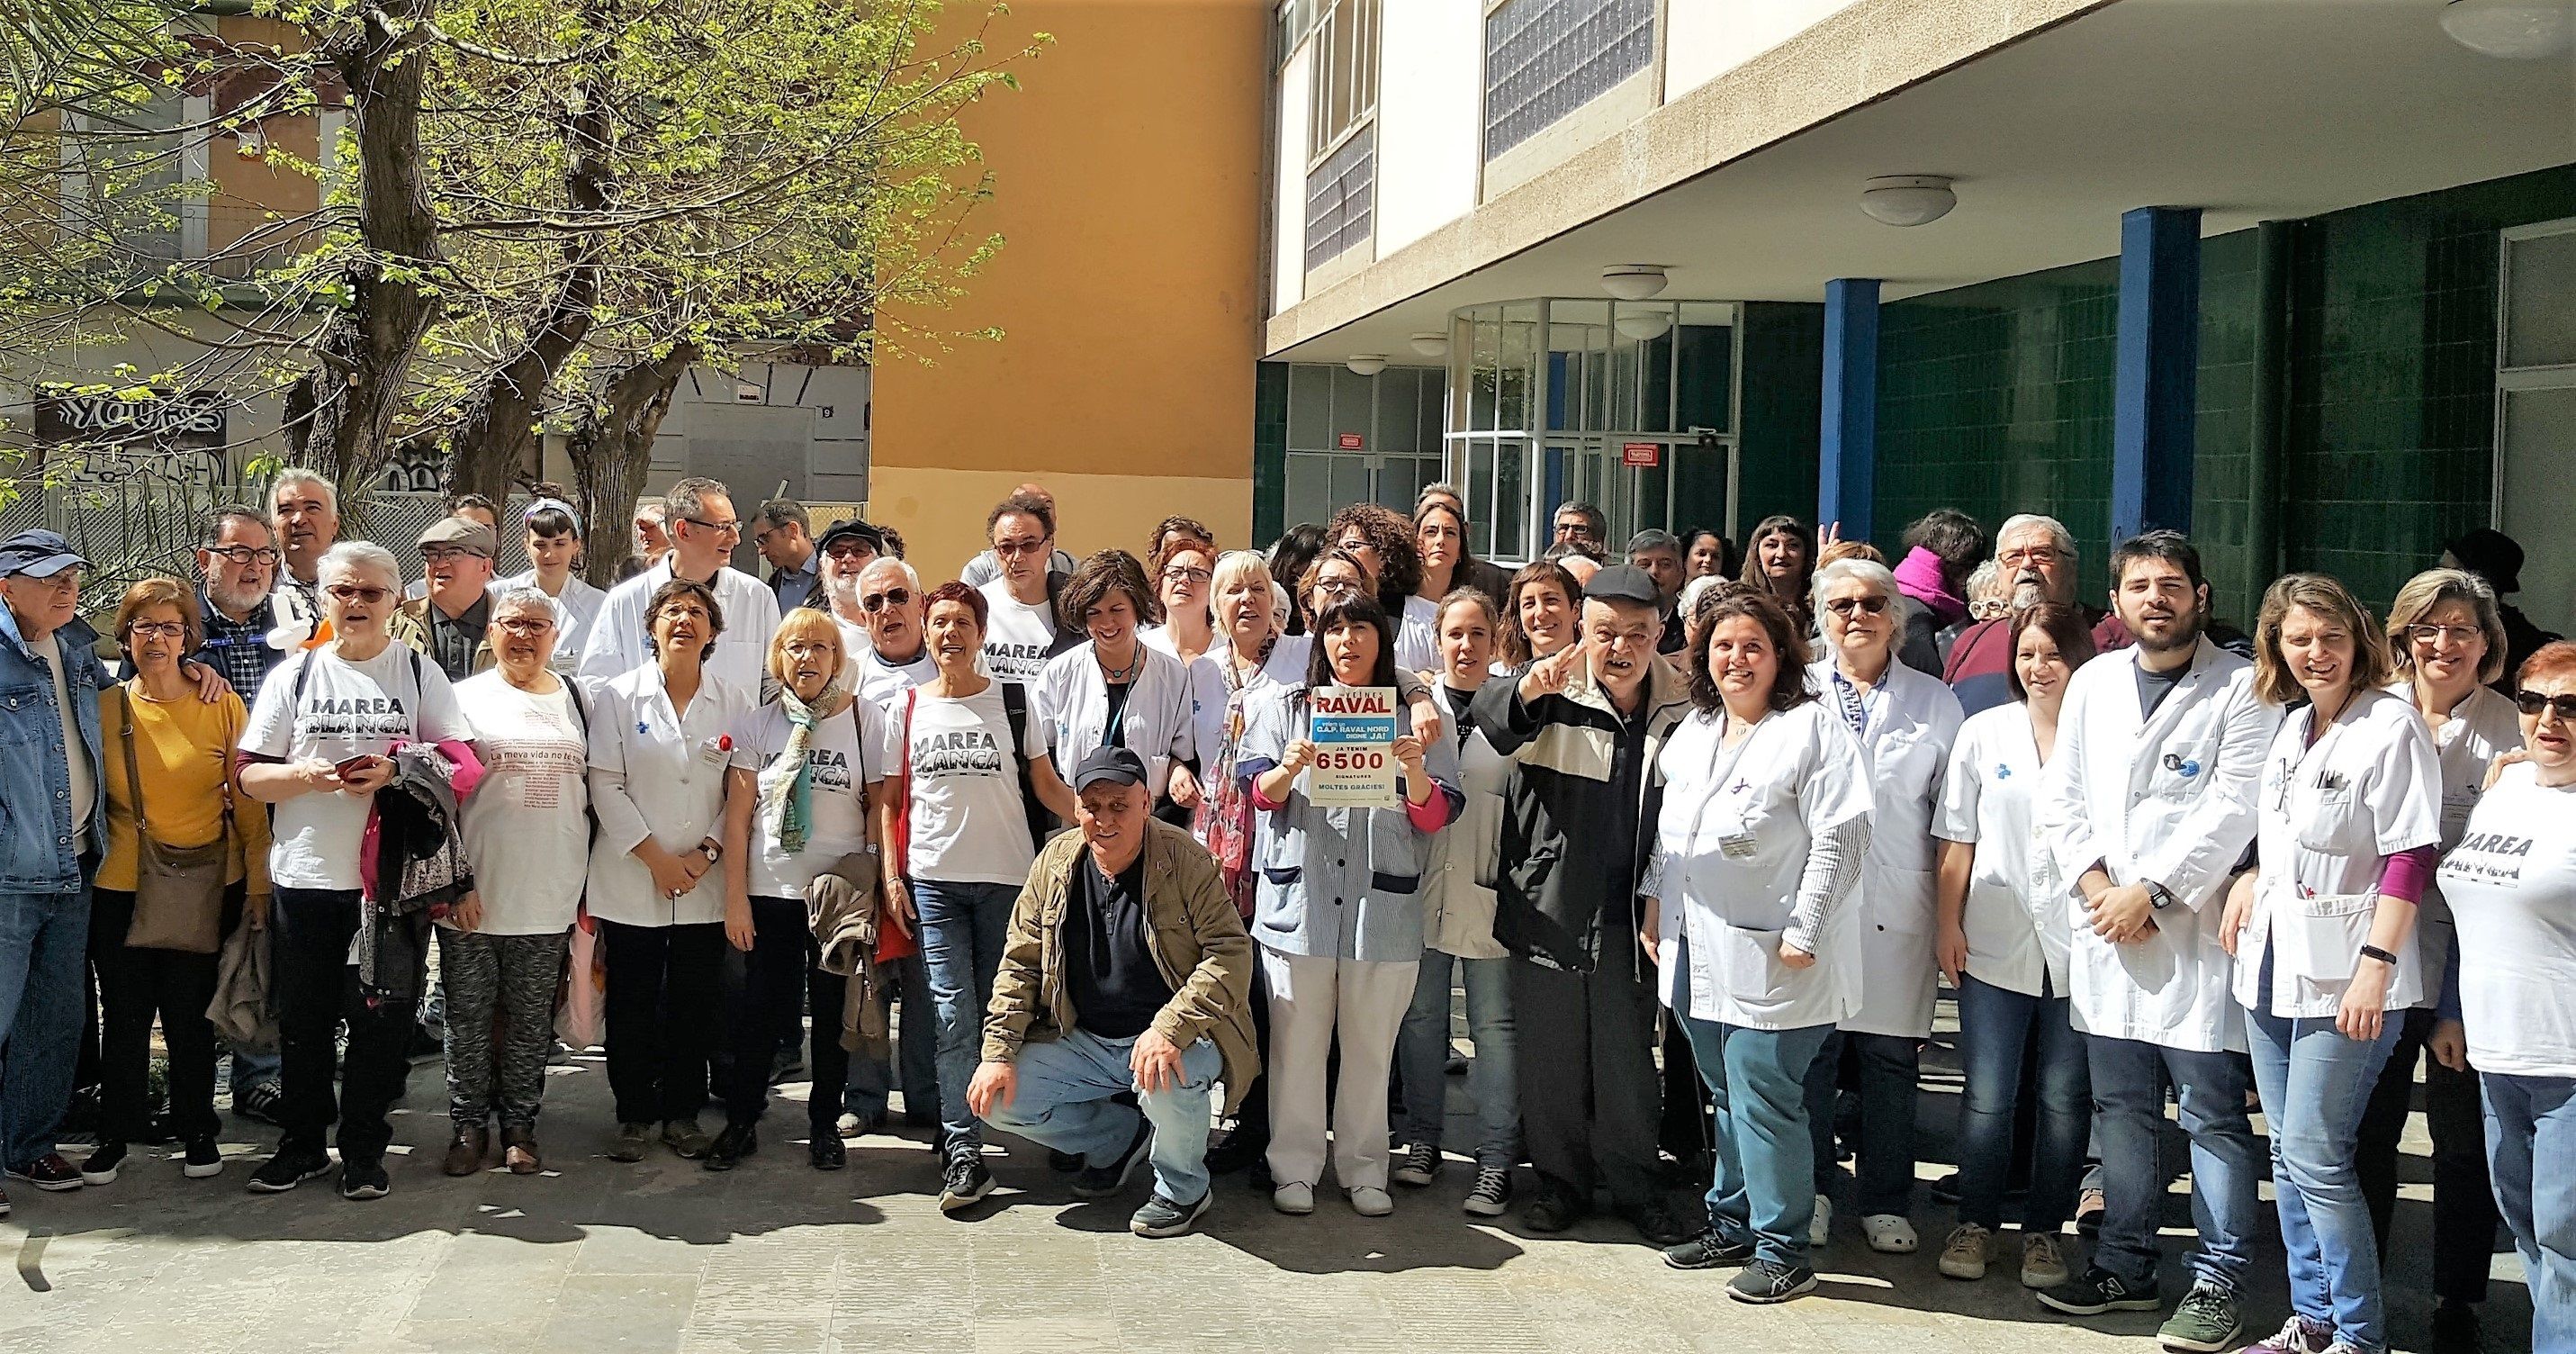 Raval de Barcelona: Más de 12 años esperando un nuevo centro de salud